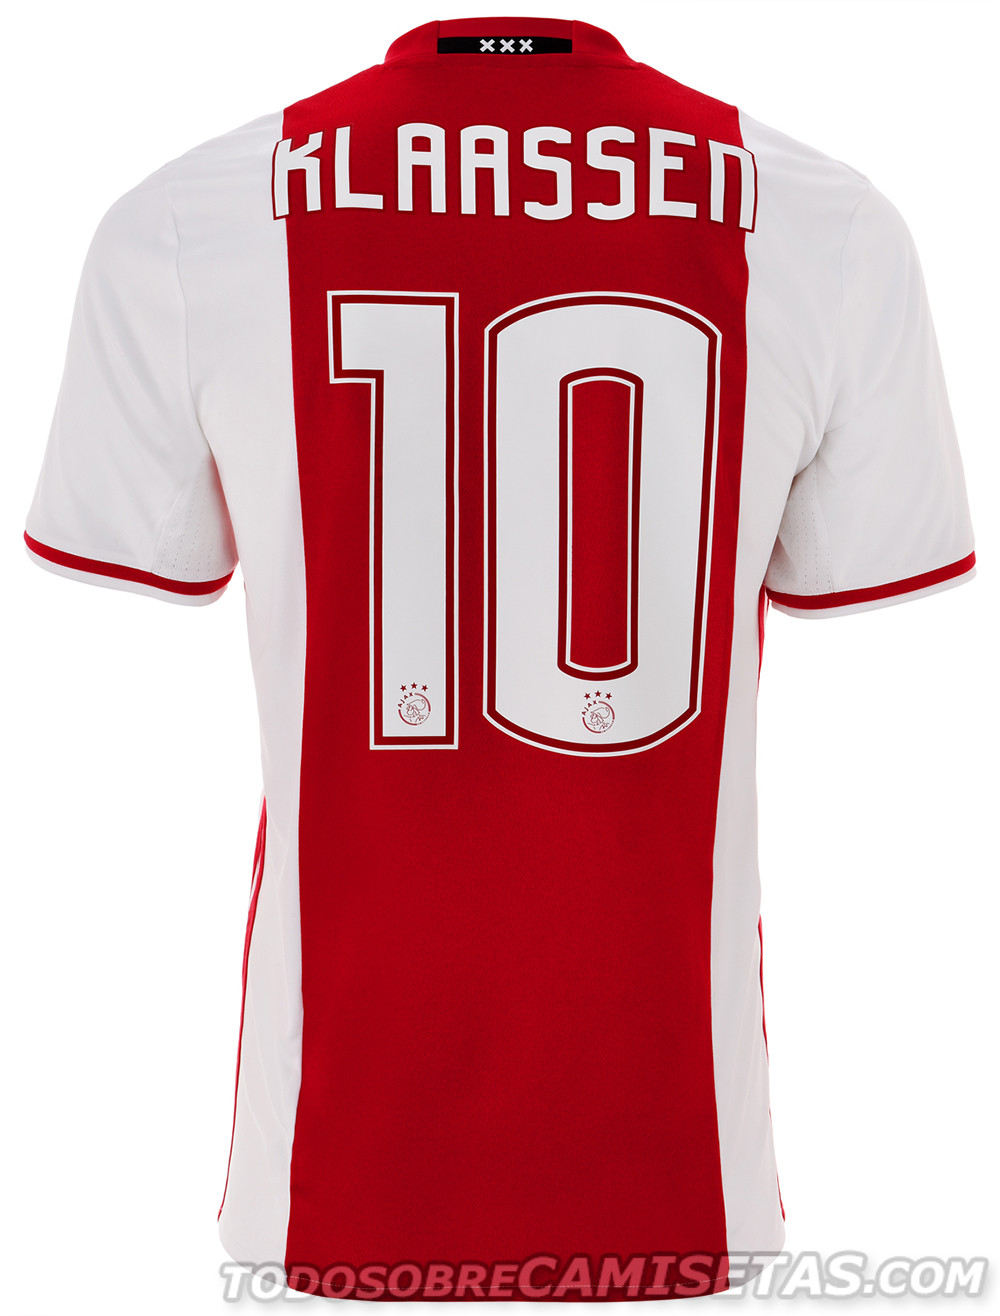 Ajax 2016-17 adidas Home Kit